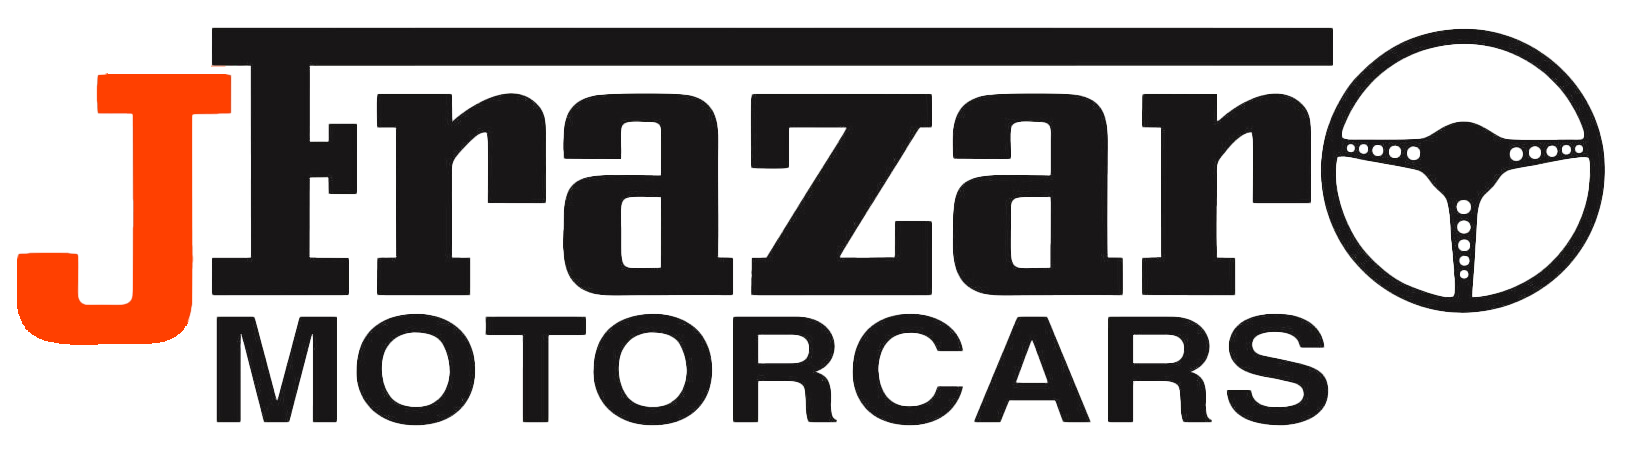 Jfrazar logo